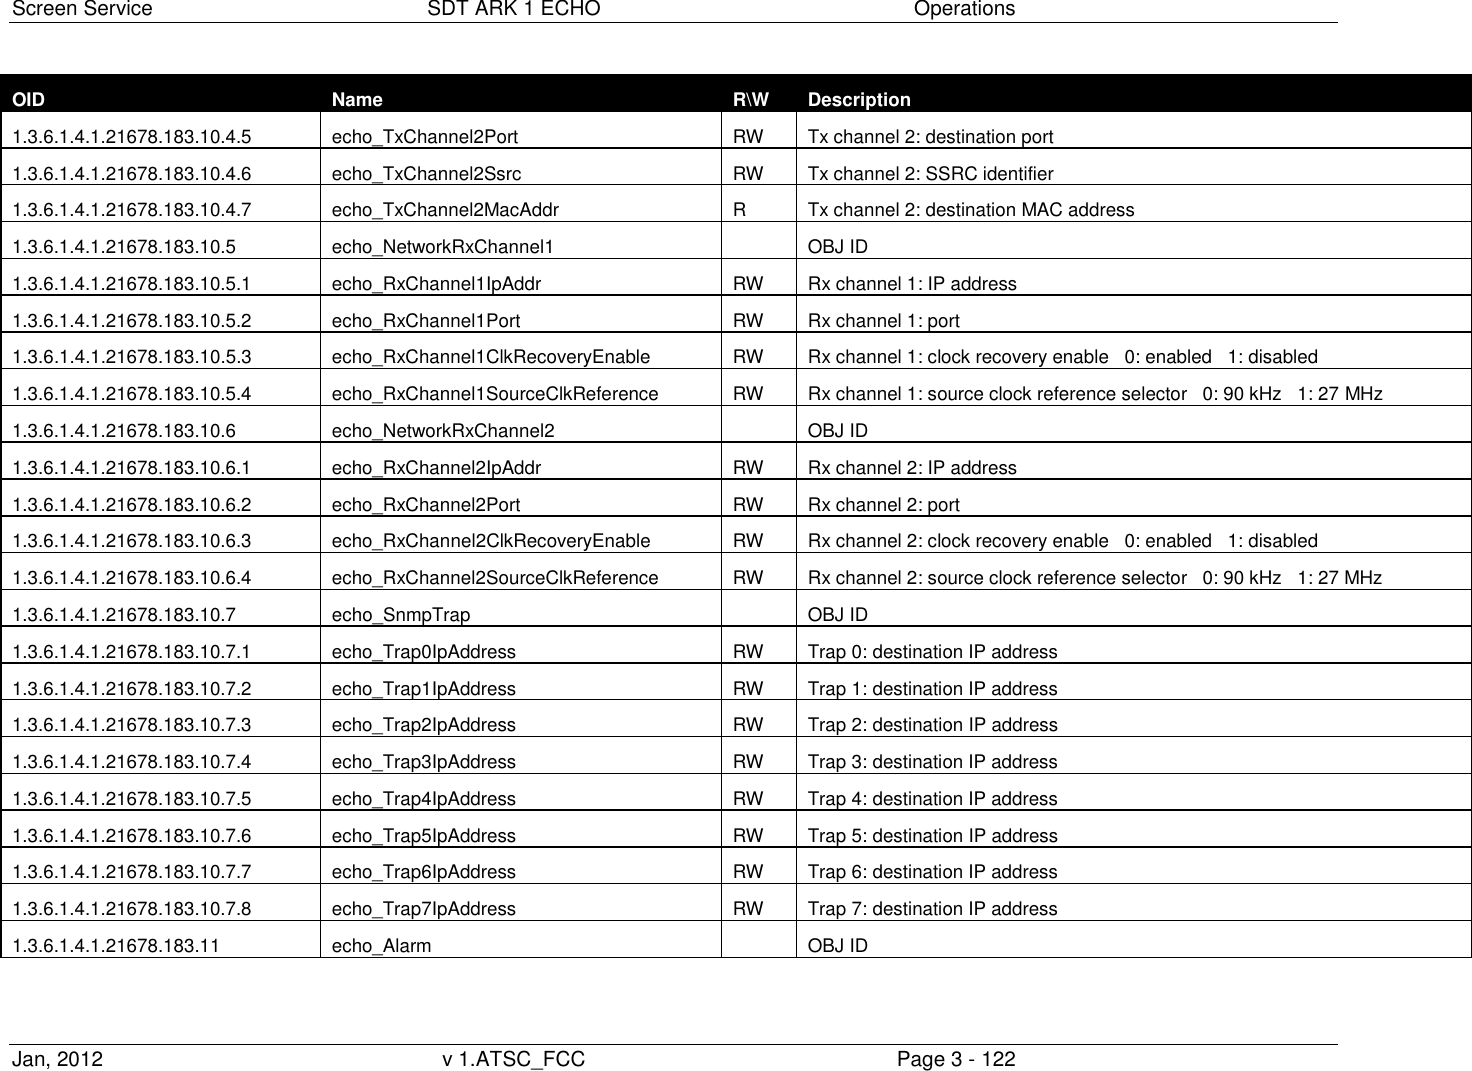 Screen Service  SDT ARK 1 ECHO  Operations Jan, 2012  v 1.ATSC_FCC  Page 3 - 122 OID Name R\W Description 1.3.6.1.4.1.21678.183.10.4.5 echo_TxChannel2Port RW Tx channel 2: destination port 1.3.6.1.4.1.21678.183.10.4.6 echo_TxChannel2Ssrc RW Tx channel 2: SSRC identifier 1.3.6.1.4.1.21678.183.10.4.7 echo_TxChannel2MacAddr R Tx channel 2: destination MAC address 1.3.6.1.4.1.21678.183.10.5 echo_NetworkRxChannel1  OBJ ID 1.3.6.1.4.1.21678.183.10.5.1 echo_RxChannel1IpAddr RW Rx channel 1: IP address 1.3.6.1.4.1.21678.183.10.5.2 echo_RxChannel1Port RW Rx channel 1: port 1.3.6.1.4.1.21678.183.10.5.3 echo_RxChannel1ClkRecoveryEnable RW Rx channel 1: clock recovery enable   0: enabled   1: disabled 1.3.6.1.4.1.21678.183.10.5.4 echo_RxChannel1SourceClkReference RW Rx channel 1: source clock reference selector   0: 90 kHz   1: 27 MHz 1.3.6.1.4.1.21678.183.10.6 echo_NetworkRxChannel2  OBJ ID 1.3.6.1.4.1.21678.183.10.6.1 echo_RxChannel2IpAddr RW Rx channel 2: IP address 1.3.6.1.4.1.21678.183.10.6.2 echo_RxChannel2Port RW Rx channel 2: port 1.3.6.1.4.1.21678.183.10.6.3 echo_RxChannel2ClkRecoveryEnable RW Rx channel 2: clock recovery enable   0: enabled   1: disabled 1.3.6.1.4.1.21678.183.10.6.4 echo_RxChannel2SourceClkReference RW Rx channel 2: source clock reference selector   0: 90 kHz   1: 27 MHz 1.3.6.1.4.1.21678.183.10.7 echo_SnmpTrap  OBJ ID 1.3.6.1.4.1.21678.183.10.7.1 echo_Trap0IpAddress RW Trap 0: destination IP address 1.3.6.1.4.1.21678.183.10.7.2 echo_Trap1IpAddress RW Trap 1: destination IP address 1.3.6.1.4.1.21678.183.10.7.3 echo_Trap2IpAddress RW Trap 2: destination IP address 1.3.6.1.4.1.21678.183.10.7.4 echo_Trap3IpAddress RW Trap 3: destination IP address 1.3.6.1.4.1.21678.183.10.7.5 echo_Trap4IpAddress RW Trap 4: destination IP address 1.3.6.1.4.1.21678.183.10.7.6 echo_Trap5IpAddress RW Trap 5: destination IP address 1.3.6.1.4.1.21678.183.10.7.7 echo_Trap6IpAddress RW Trap 6: destination IP address 1.3.6.1.4.1.21678.183.10.7.8 echo_Trap7IpAddress RW Trap 7: destination IP address 1.3.6.1.4.1.21678.183.11 echo_Alarm  OBJ ID 